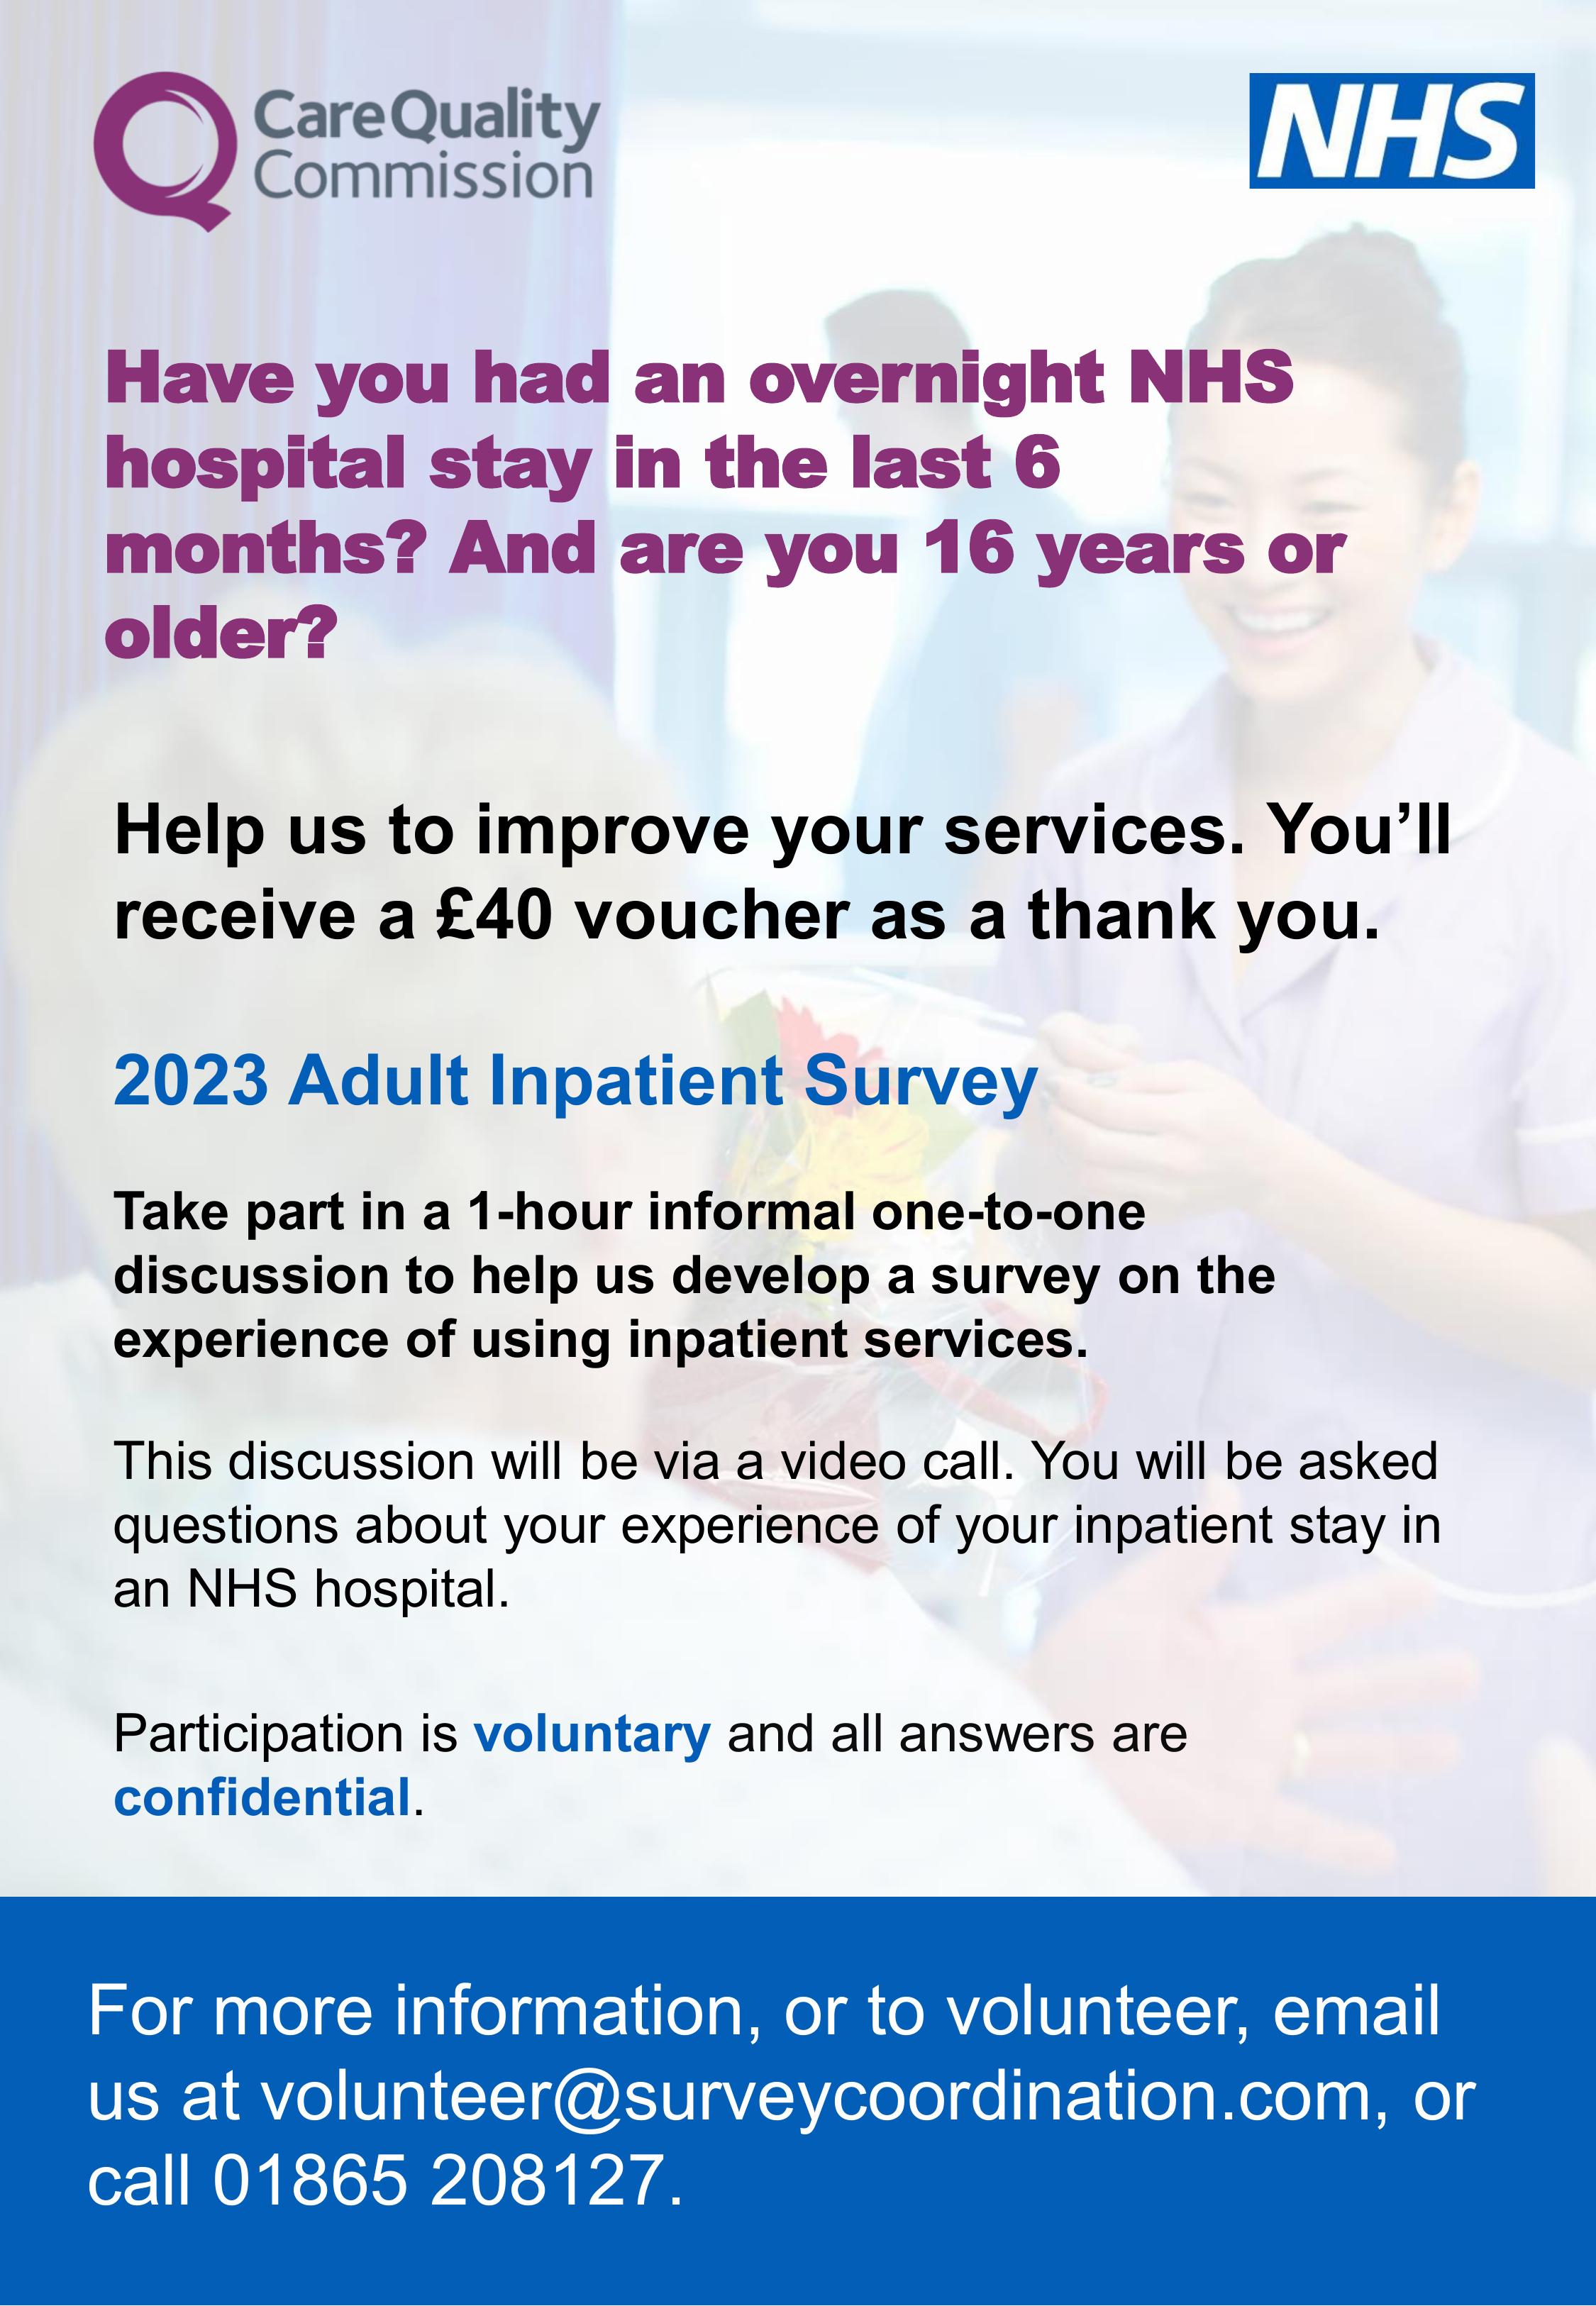 Adult Inpatient Survey poster